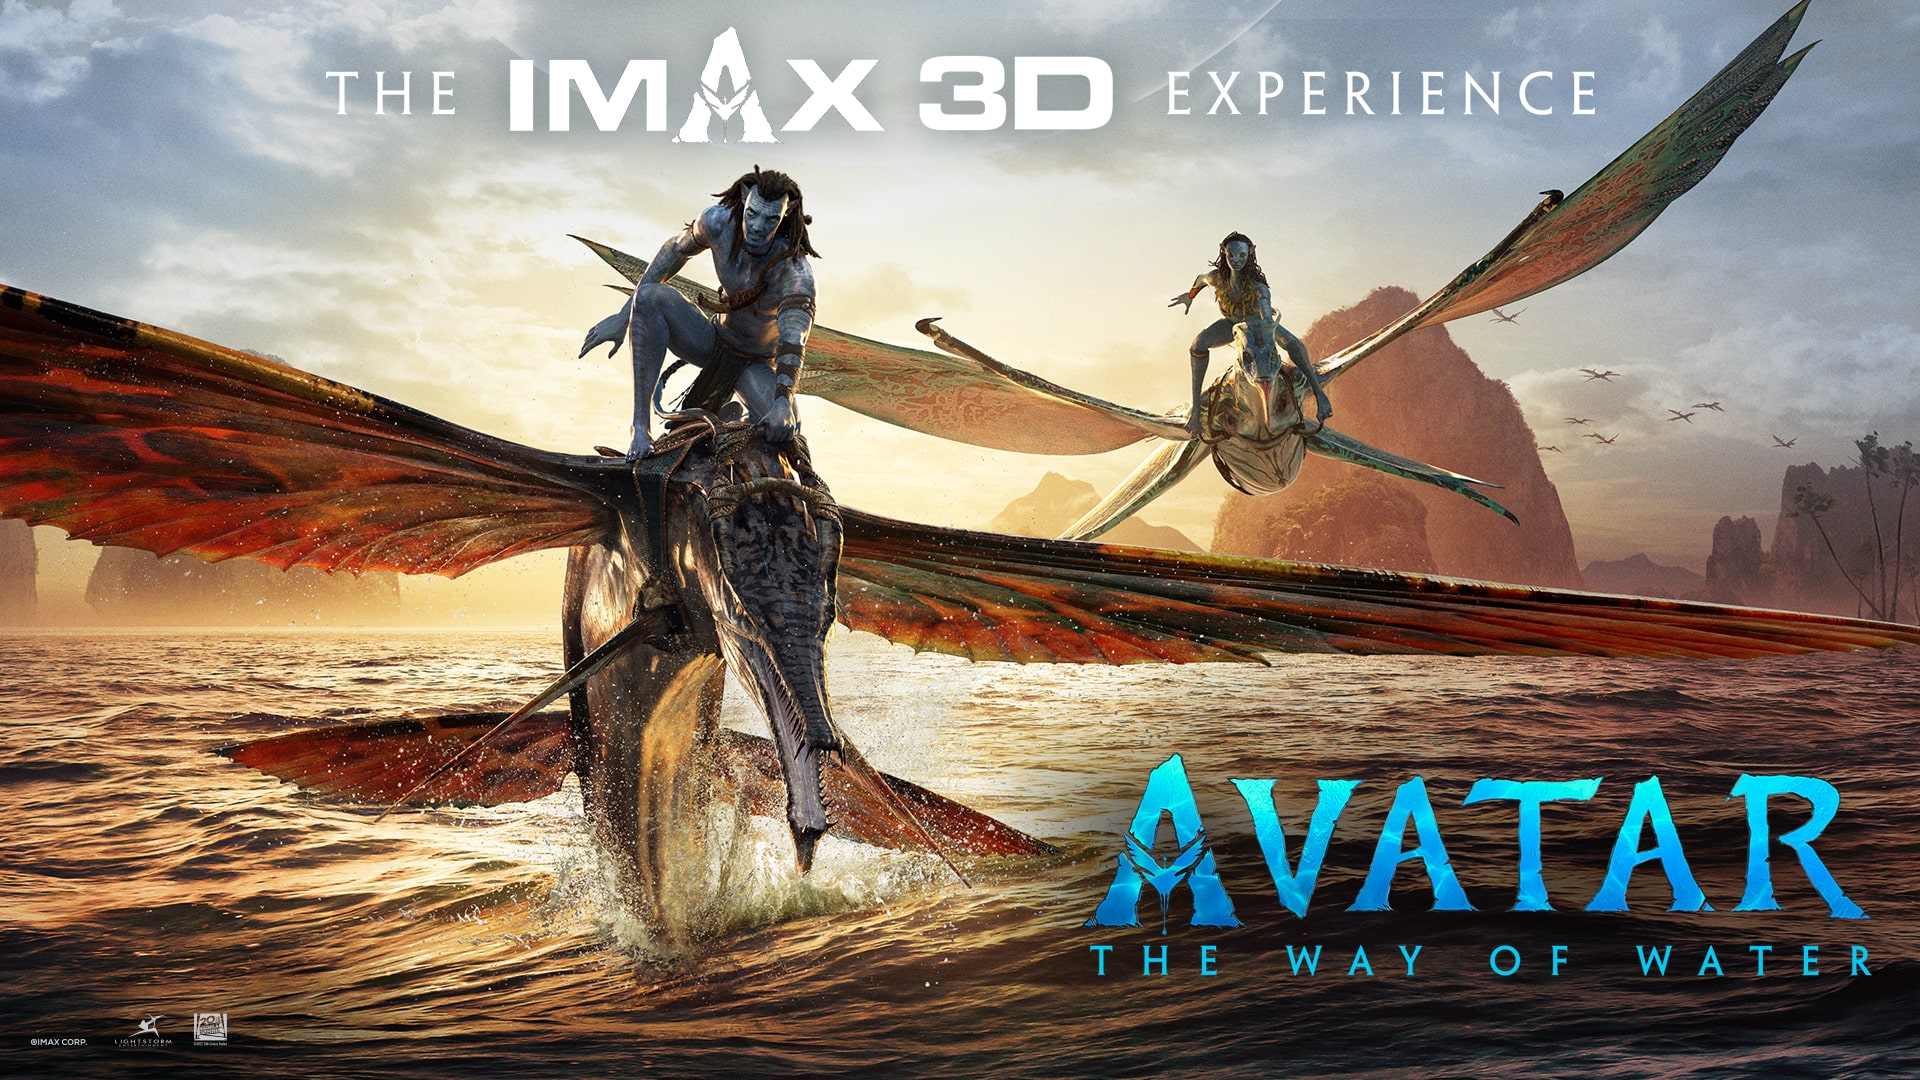 Vì sao khán giả nên xem “Avatar 2” ở các định dạng đặc biệt?